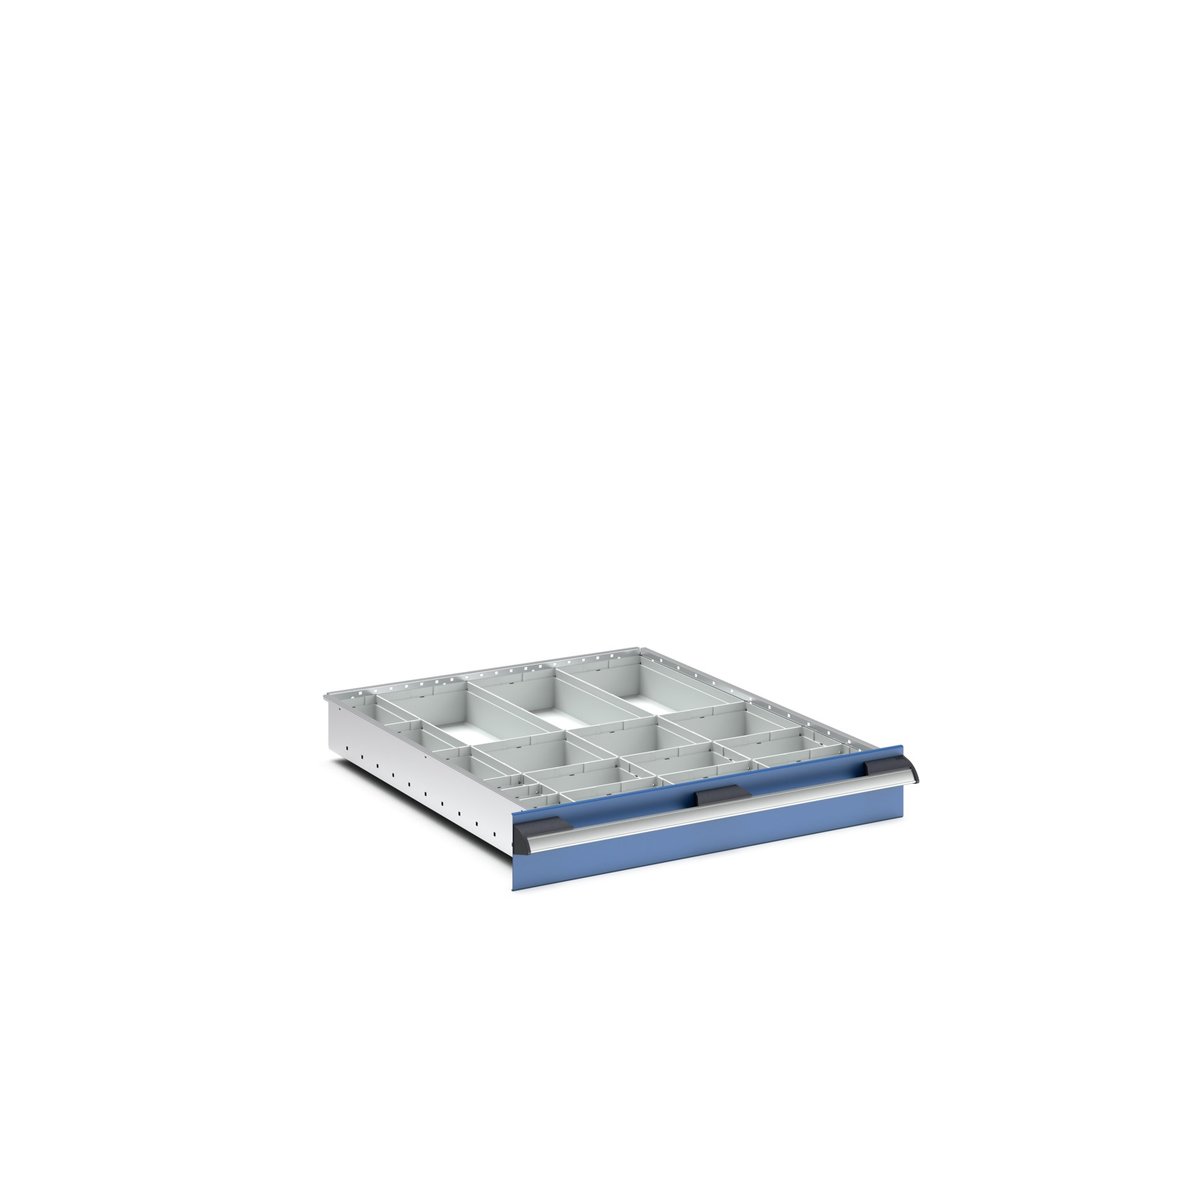 43020762 - cubio plastic box divider kit